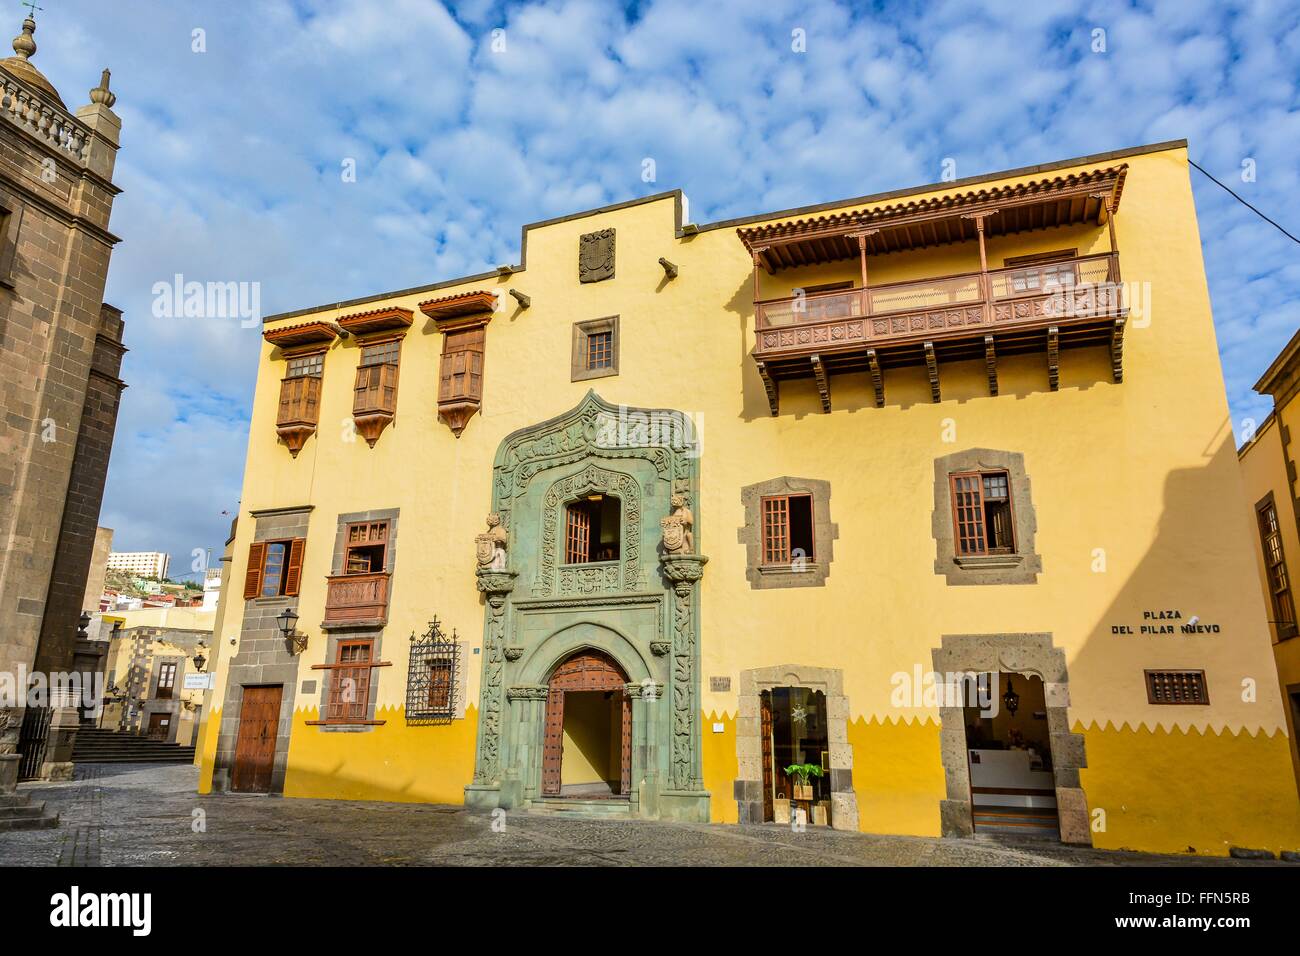 Casa de Colon (The house of Christopher Columbus), Las Palmas, Gran Canaria, Spain Stock Photo